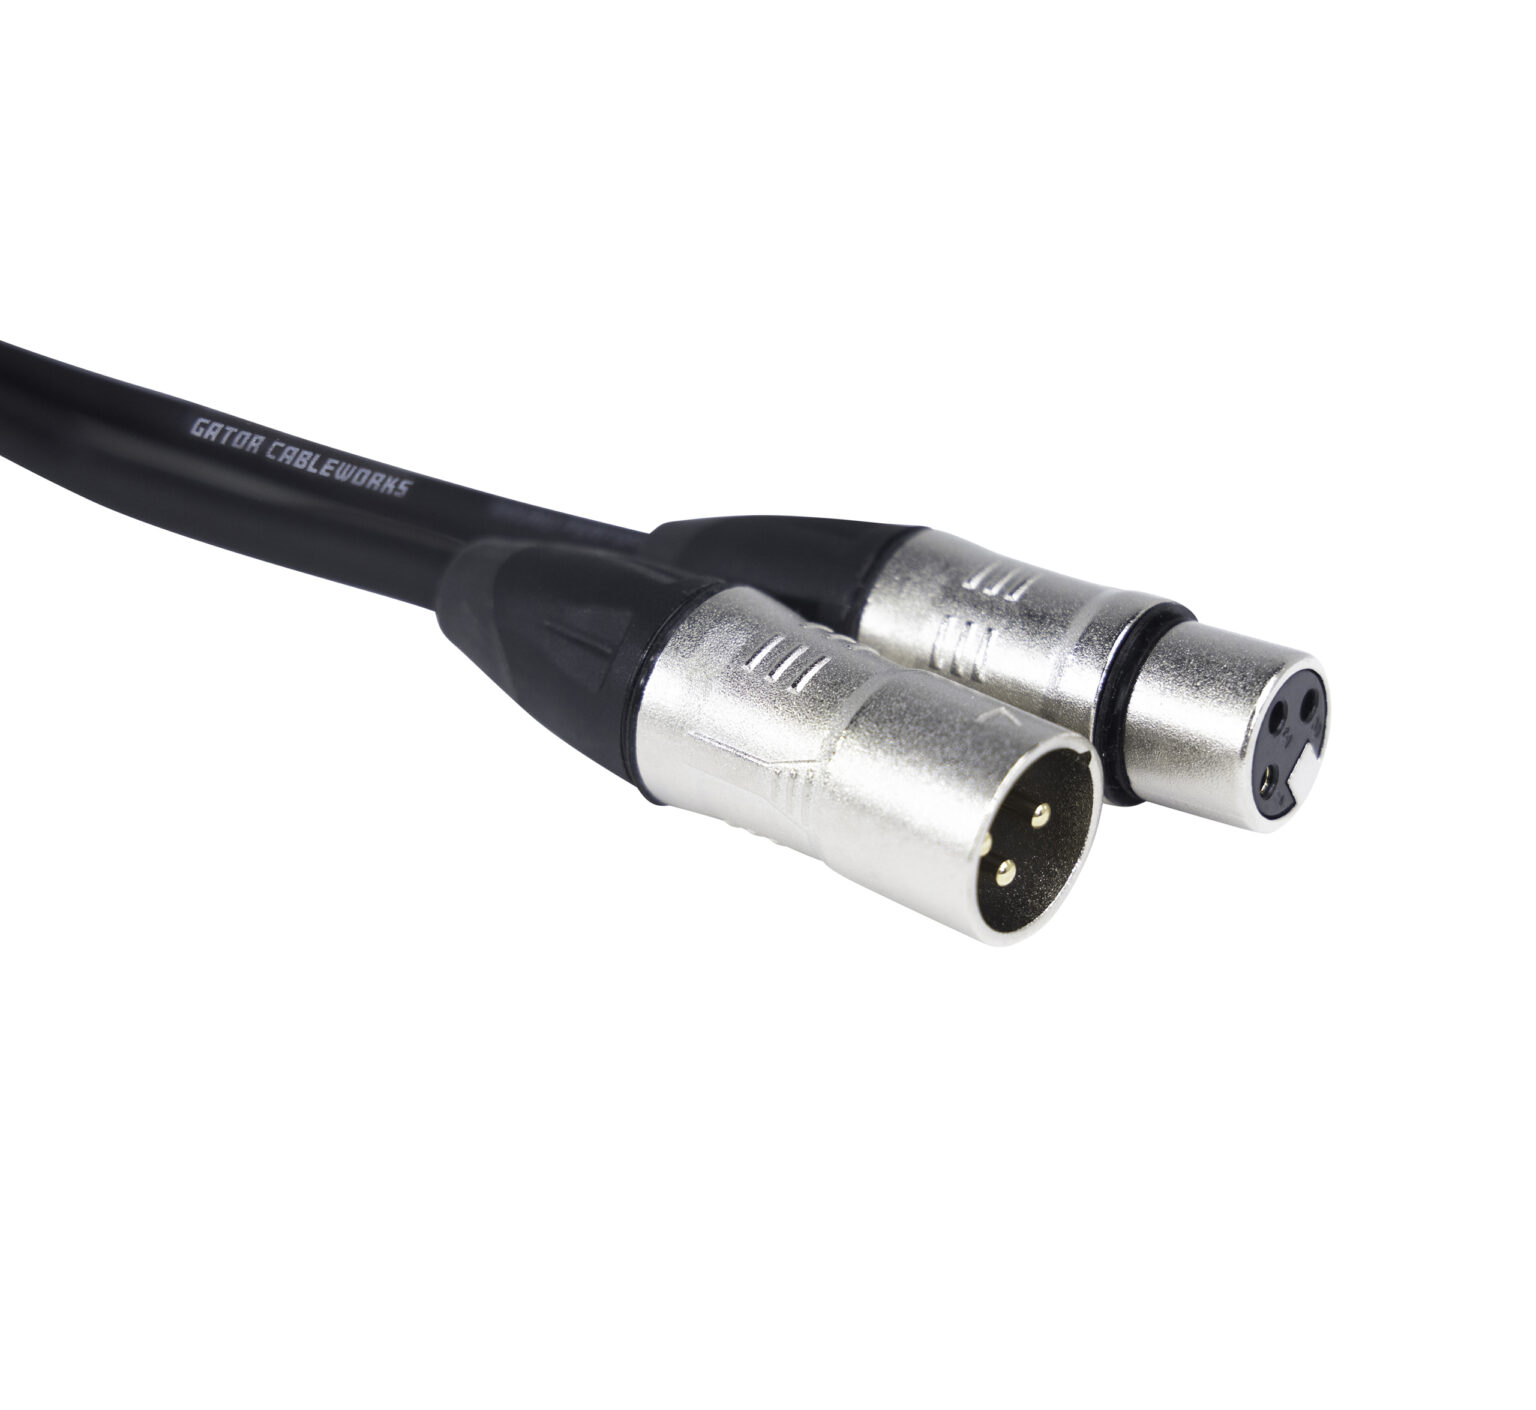 GCWB-XLR-20 20 Foot XLR Microphone Cable